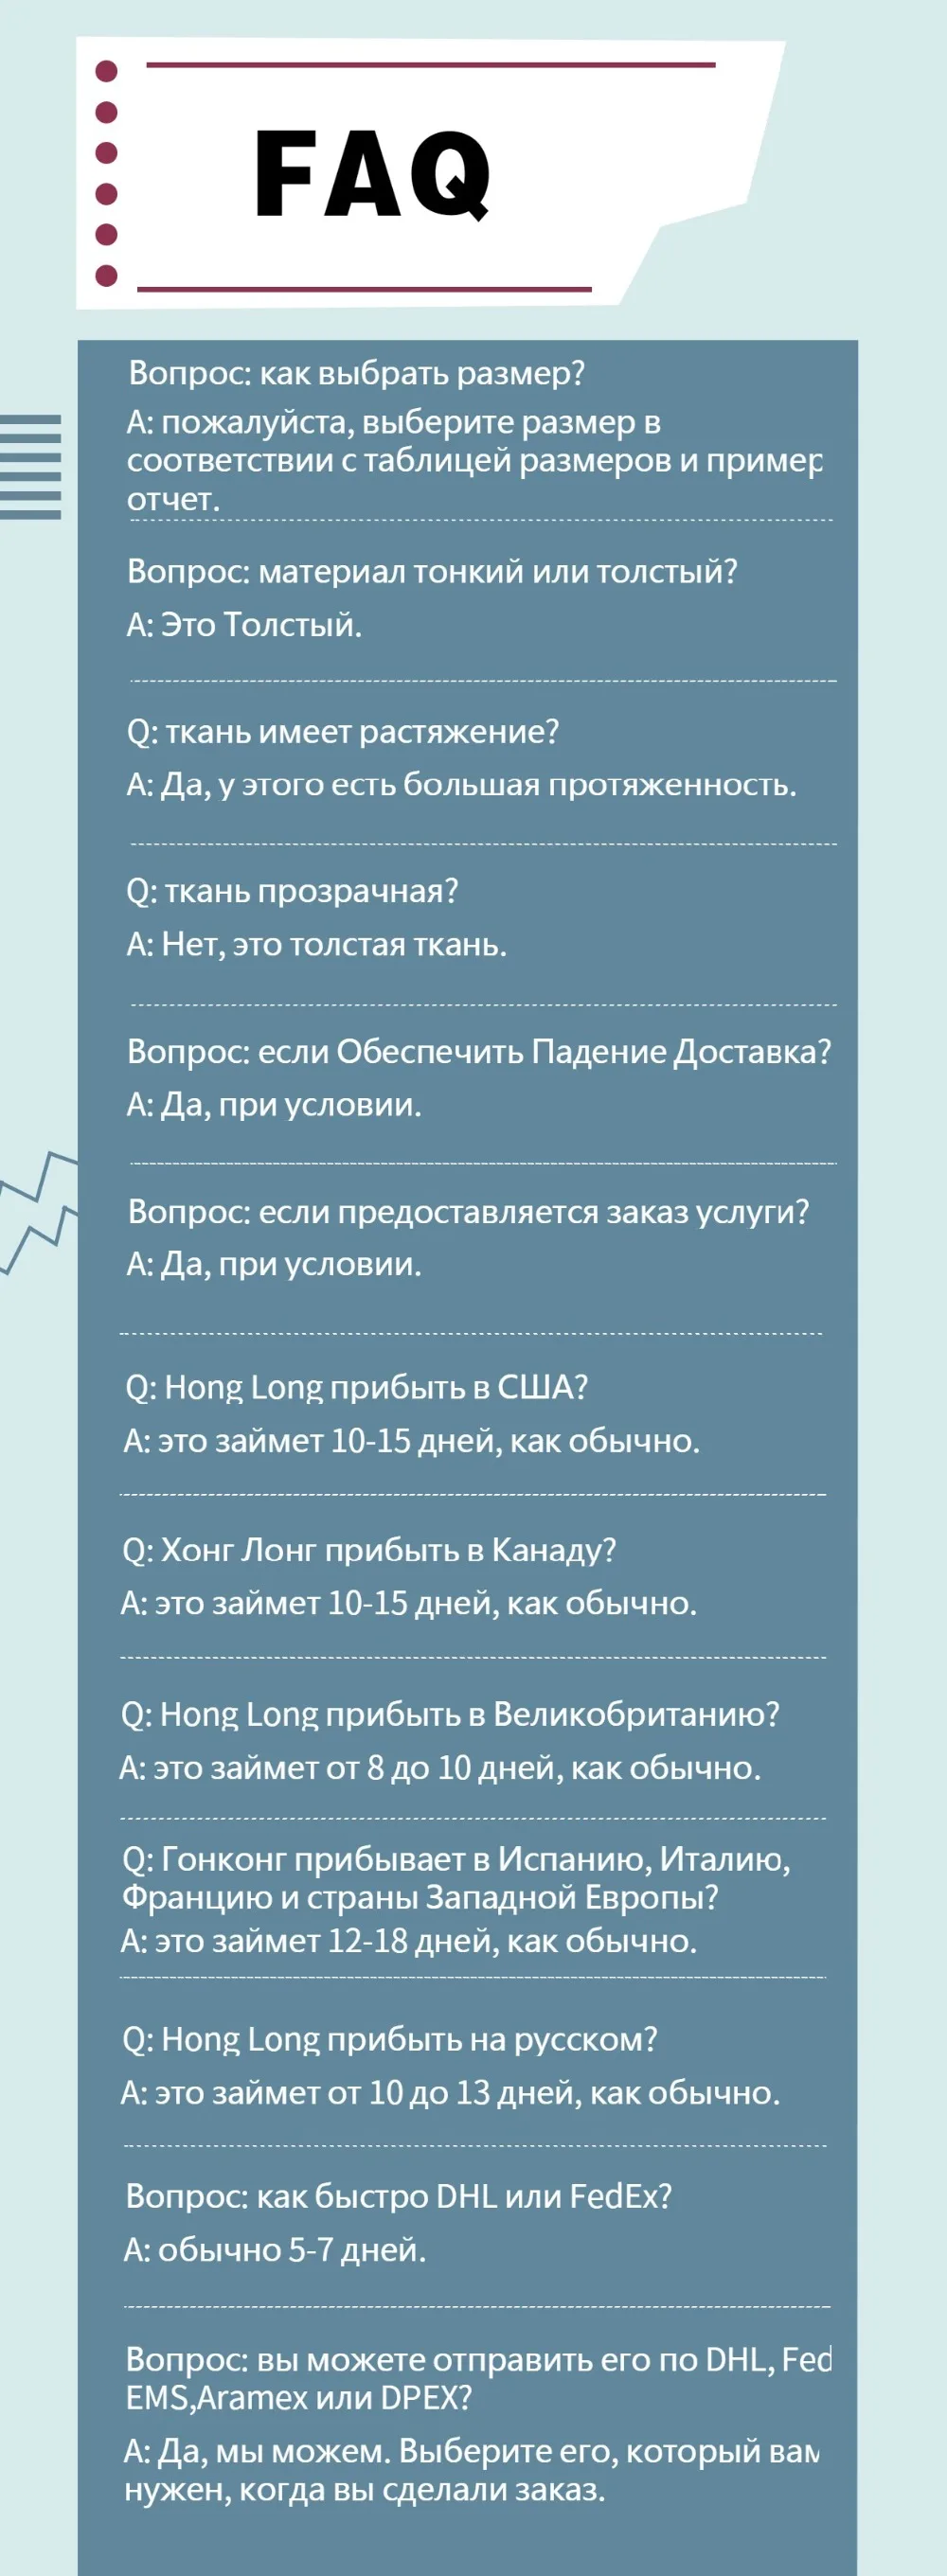 俄语版Q&A(1)